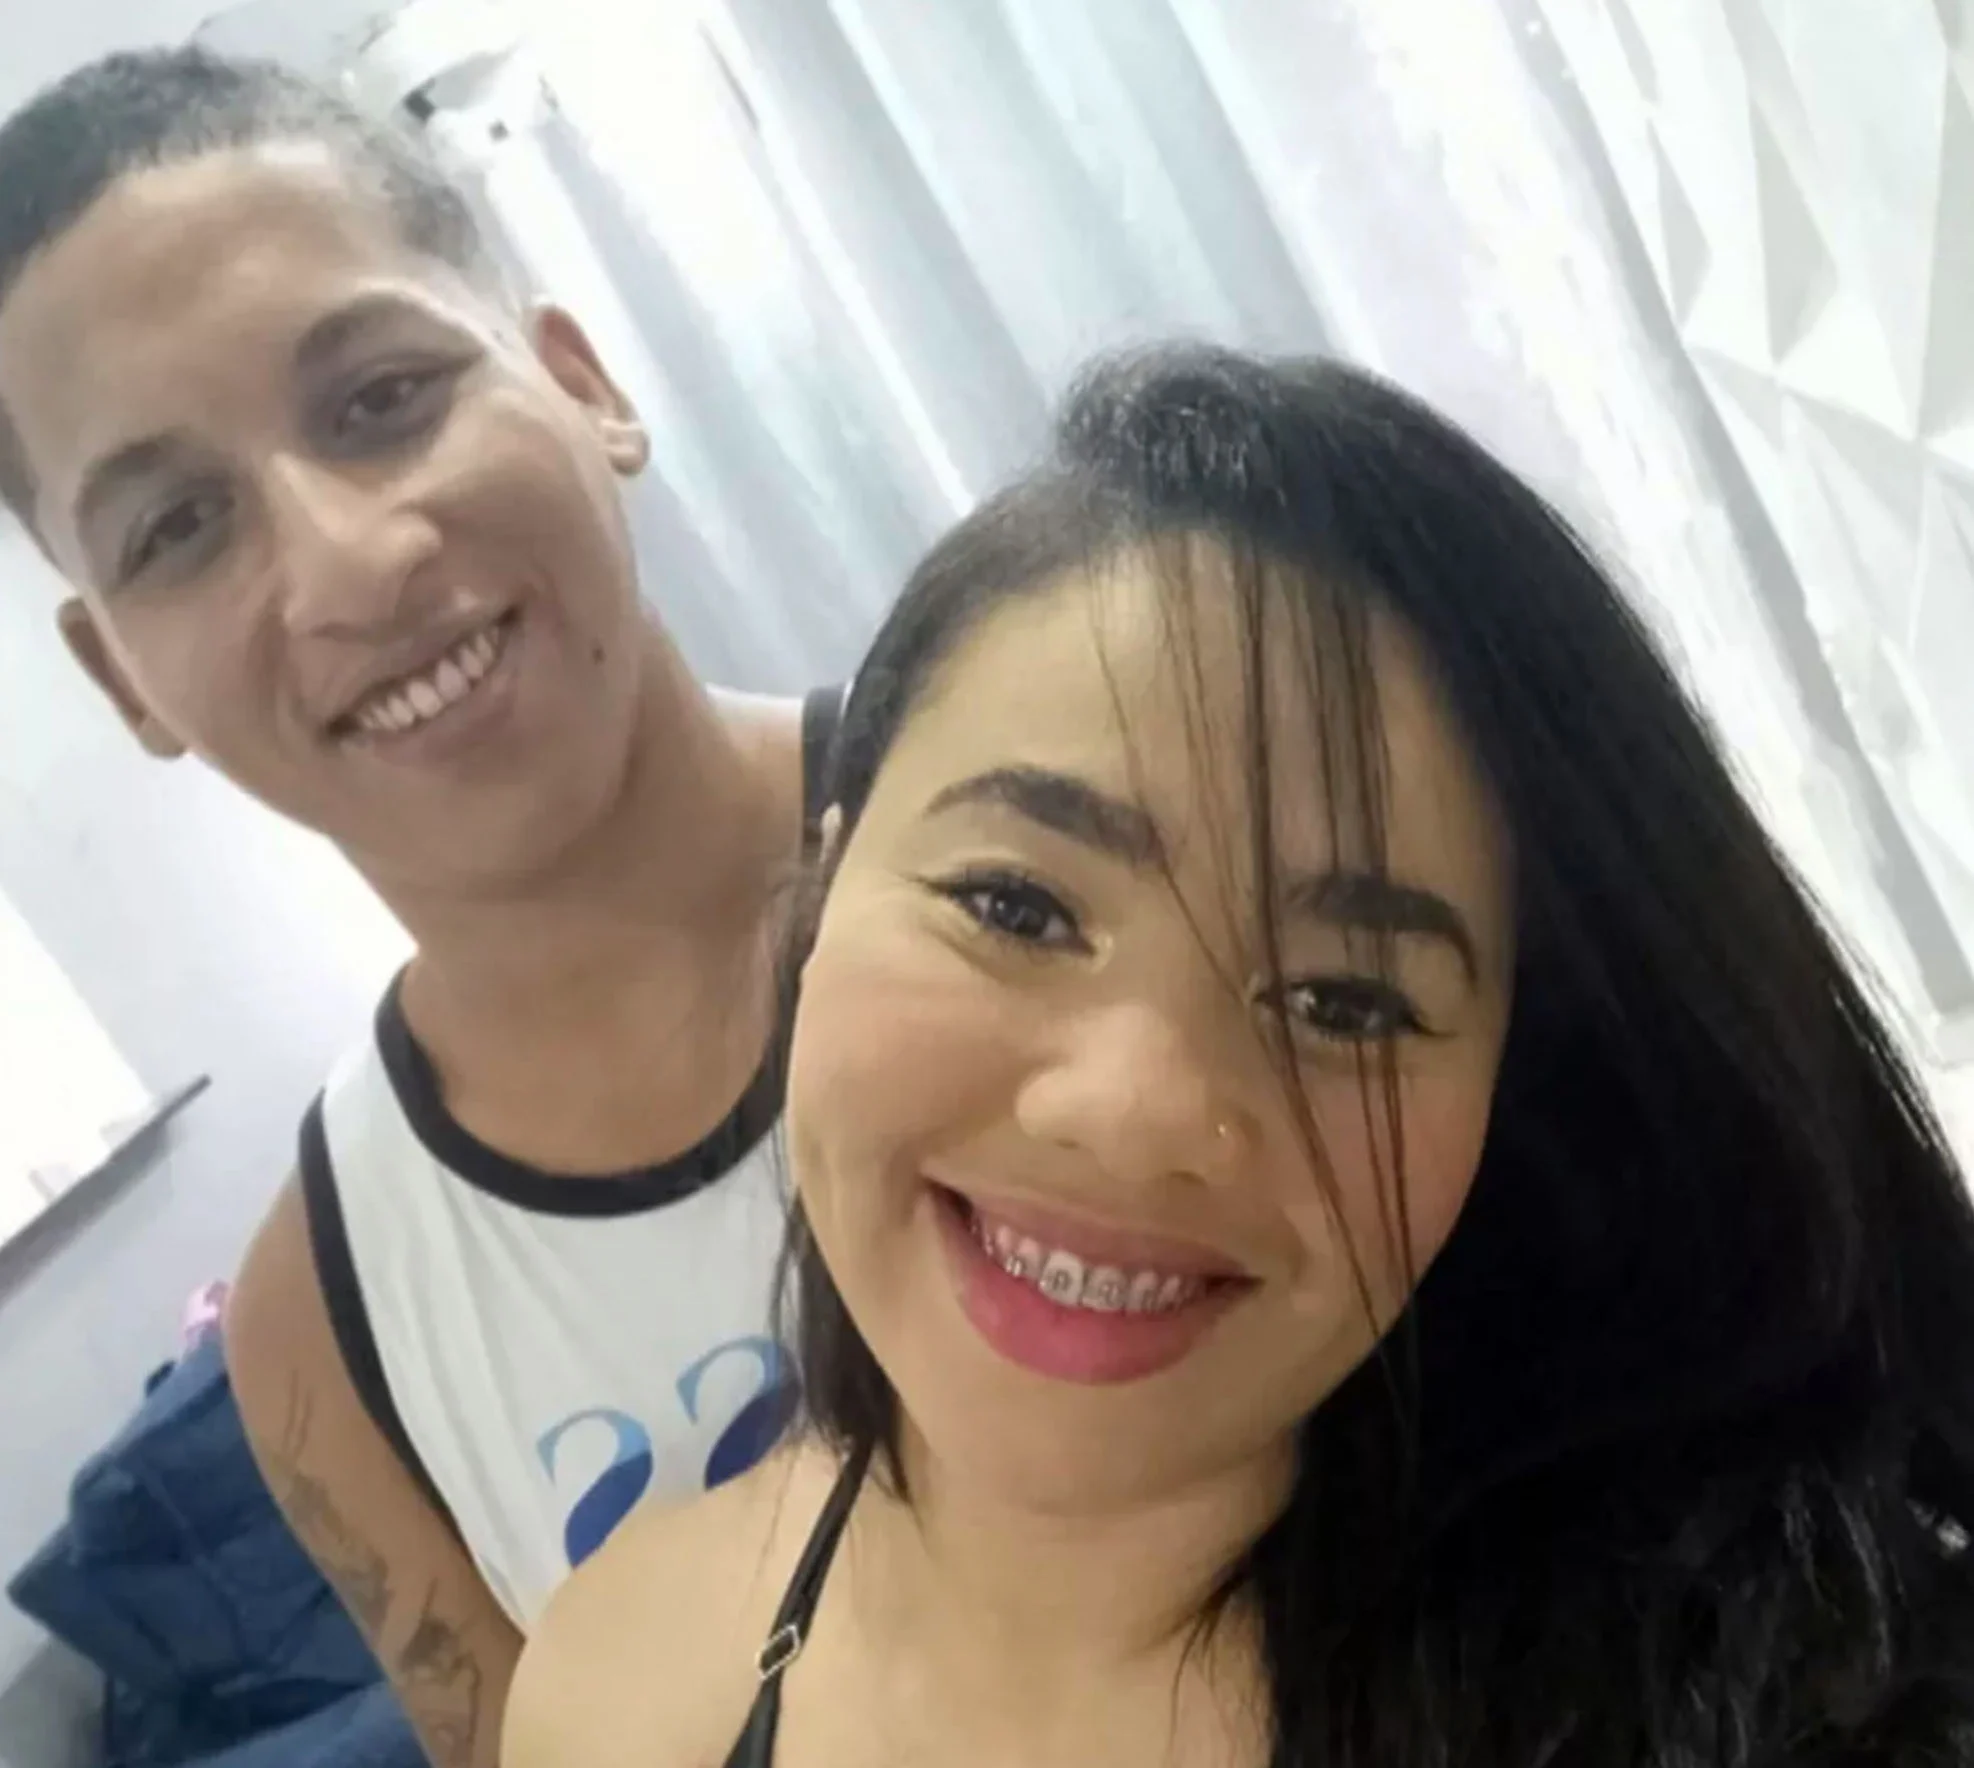 Ladrão baleado na porta de unidade de saúde no Rio morre sem receber socorro, diz família